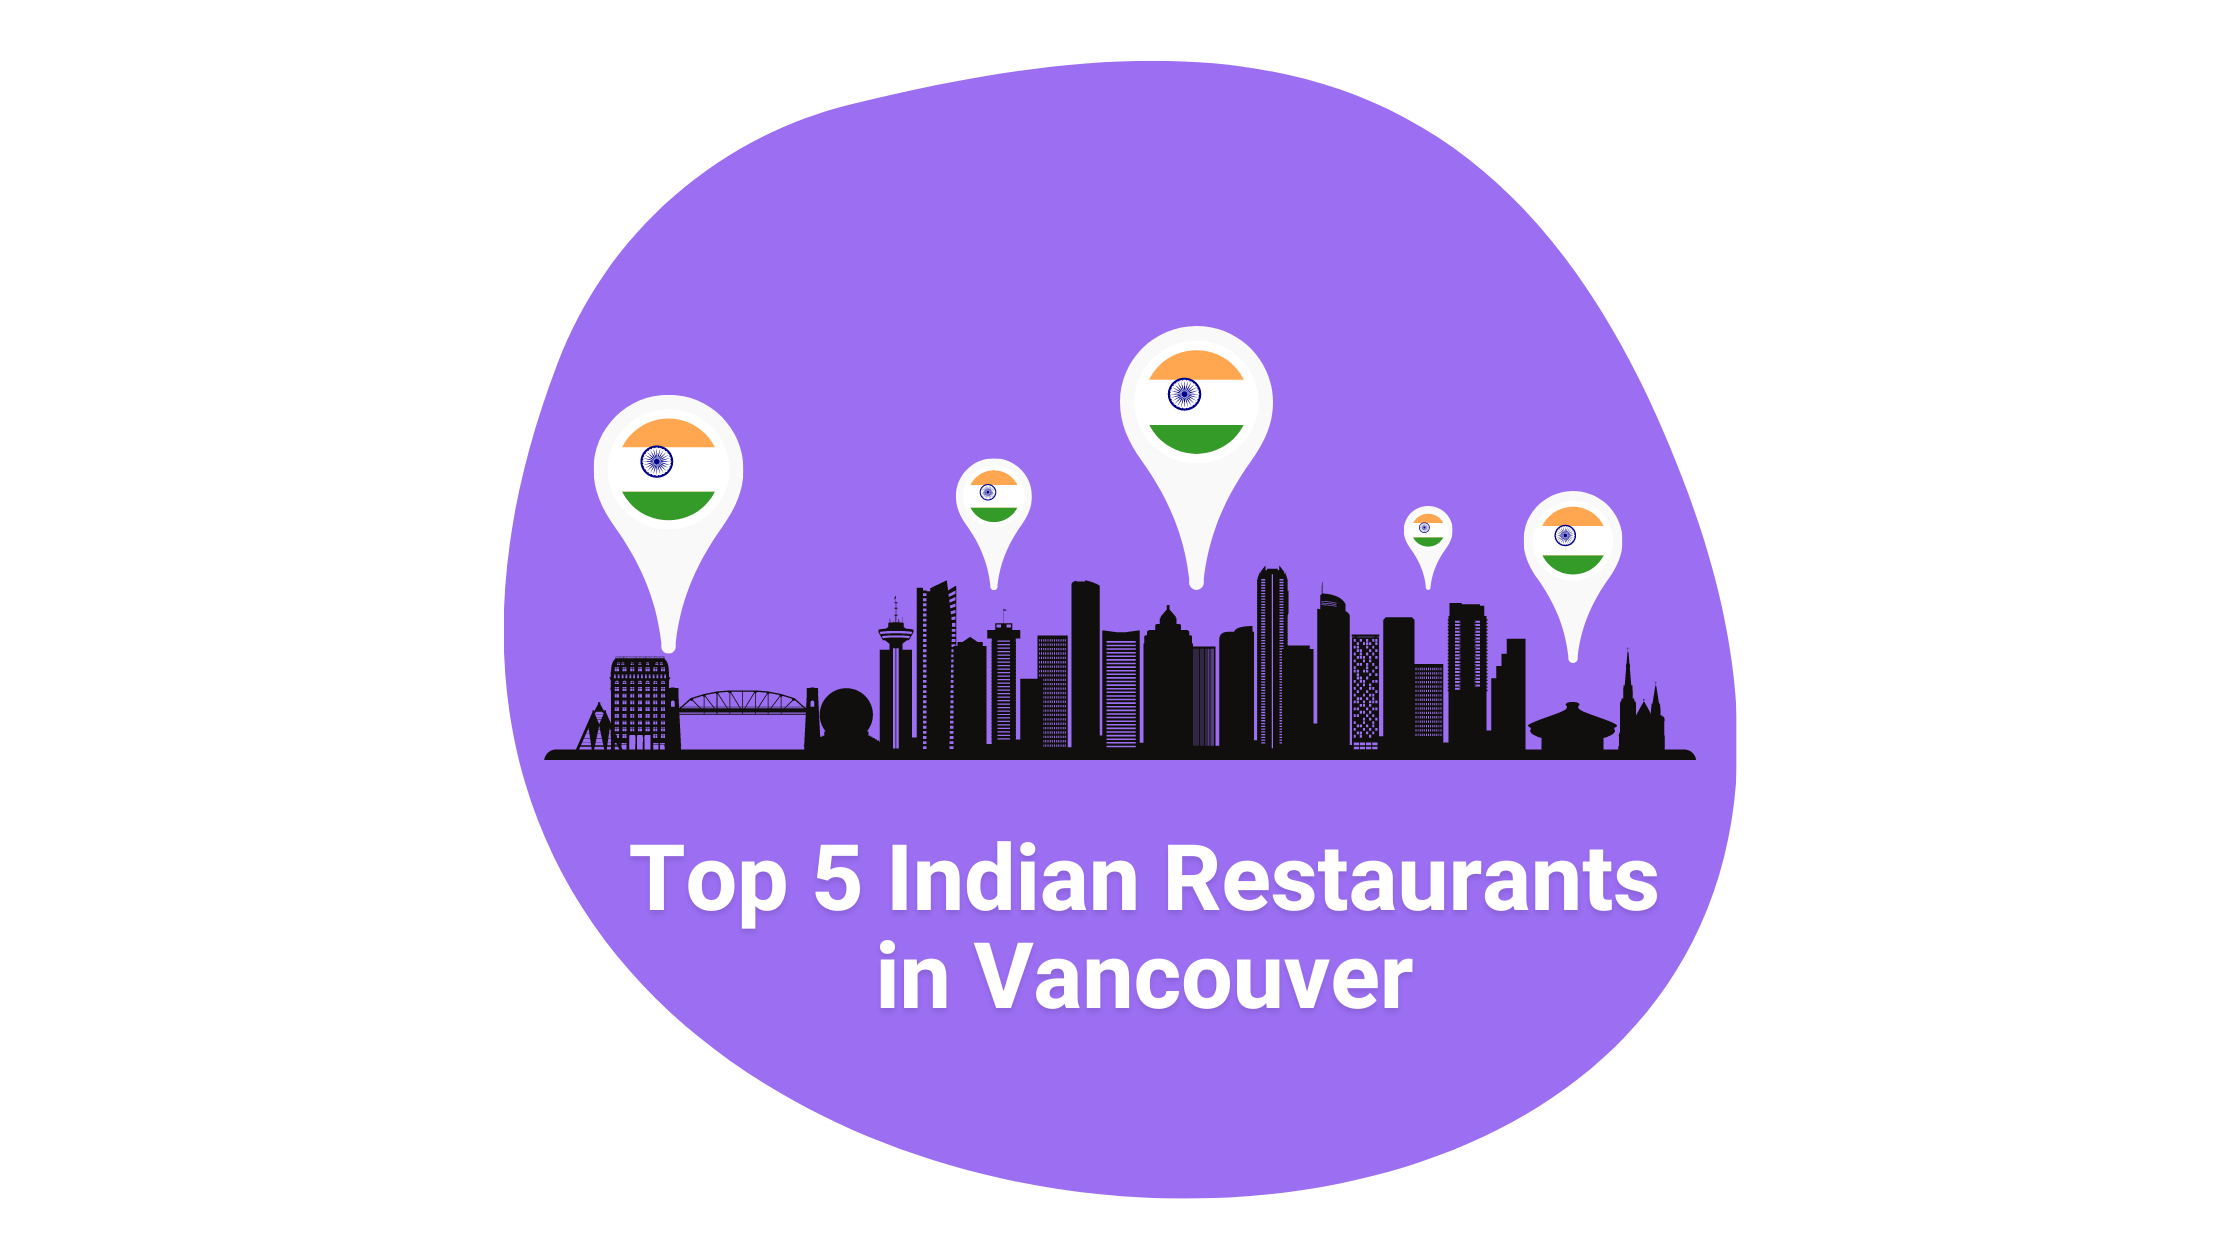 Top 5 Indian Restaurants in Vancouver